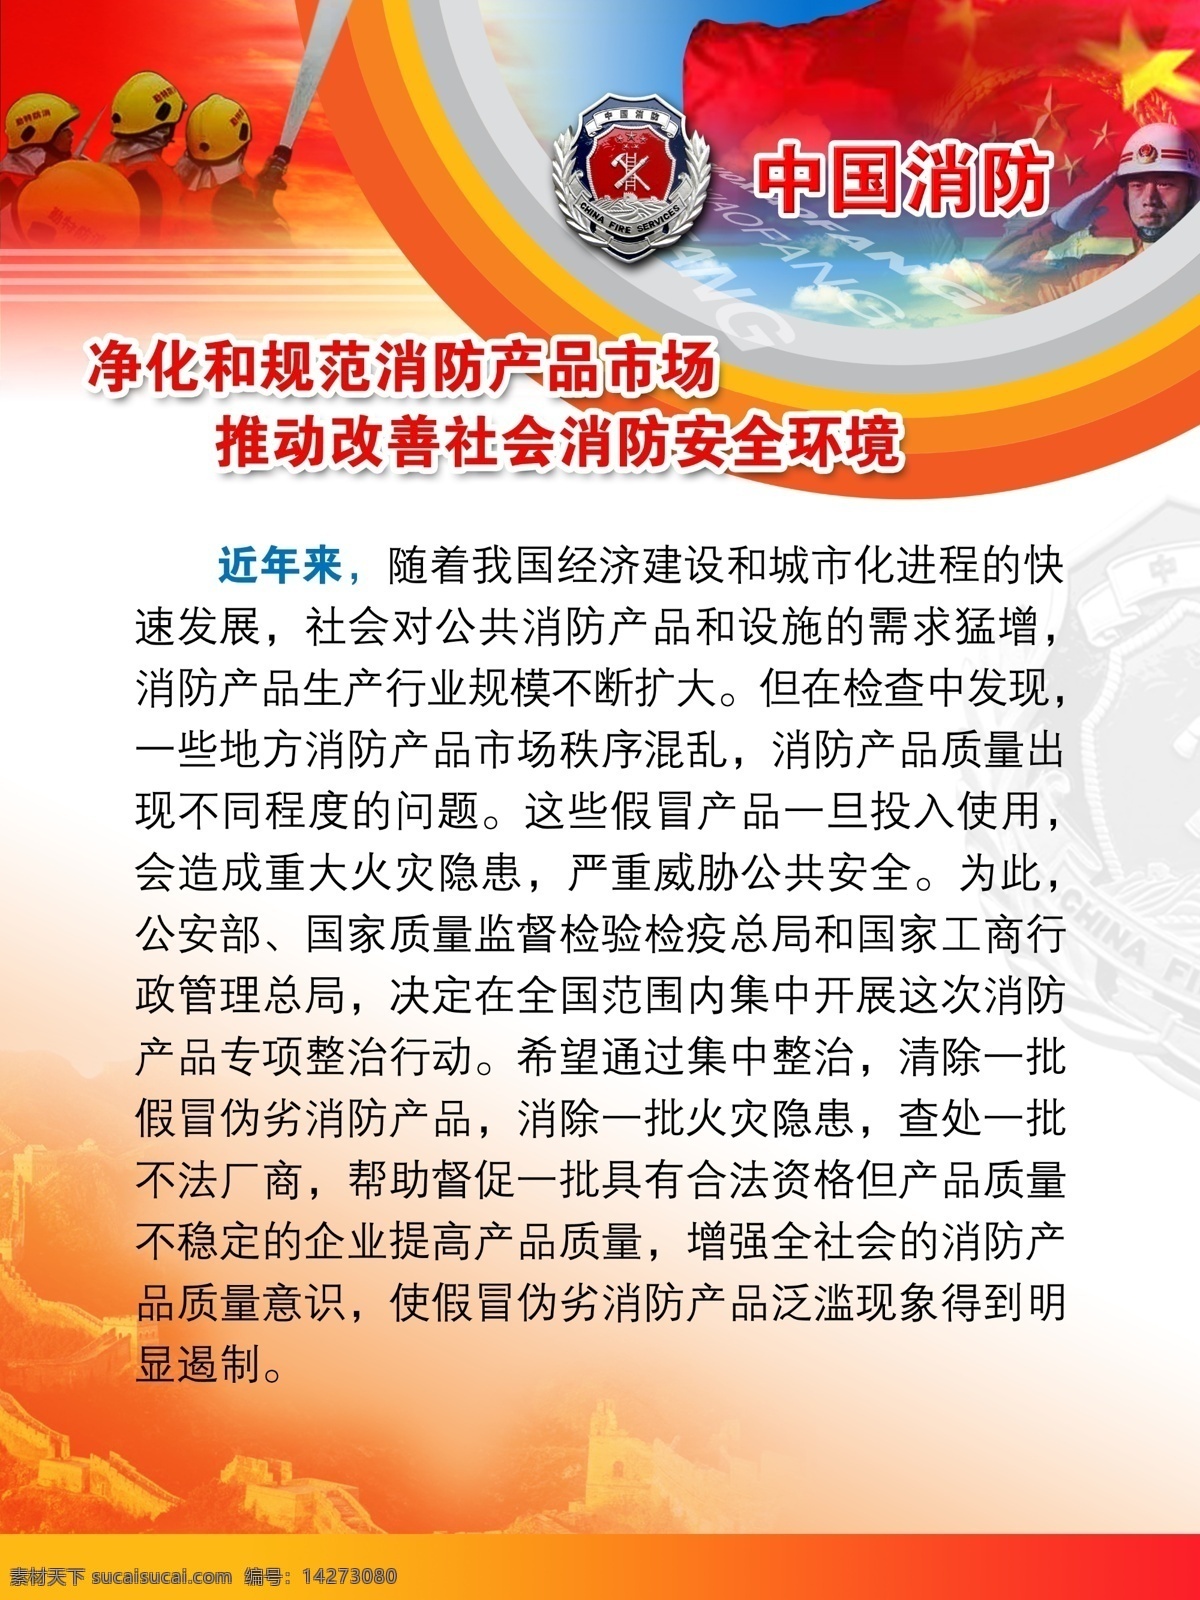 中国 消防 制度 广告设计模板 国微 红旗 消防制度 源文件 展板模板 中国消防制度 红色制度 其他展板设计